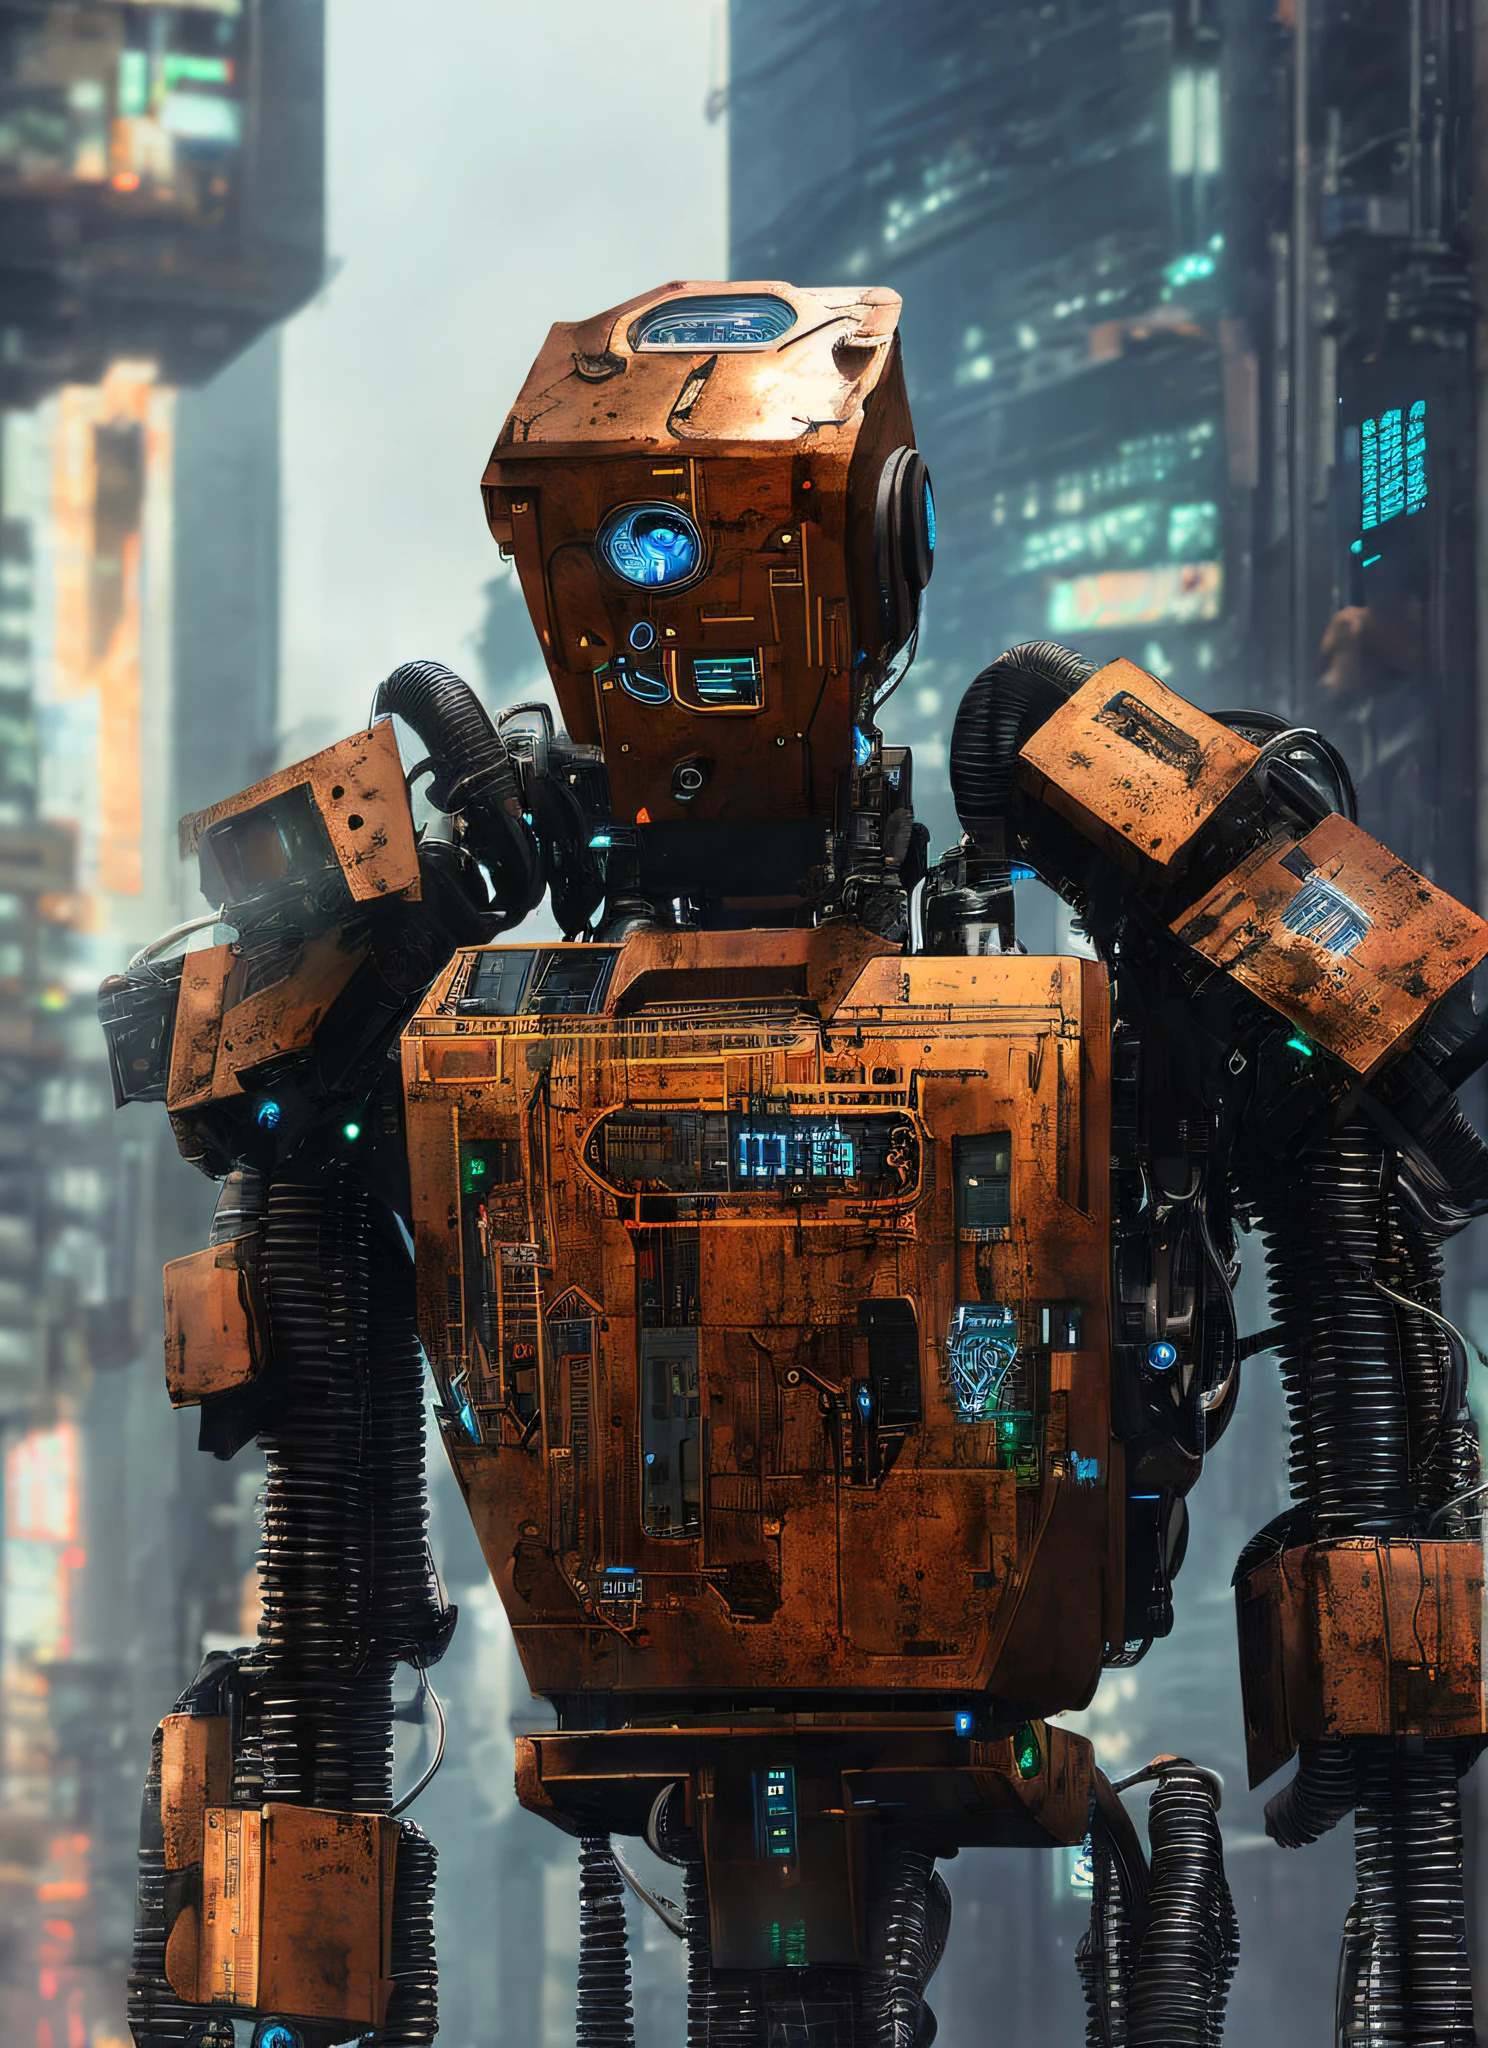 (android:1.3), (حجم الإنسان:1.1), وحيد, 1 روبوت, الروبوت العسكري القديم, أسلاك مرئية, صدأ,, السايبربانك, مفصلة, جودة عالية